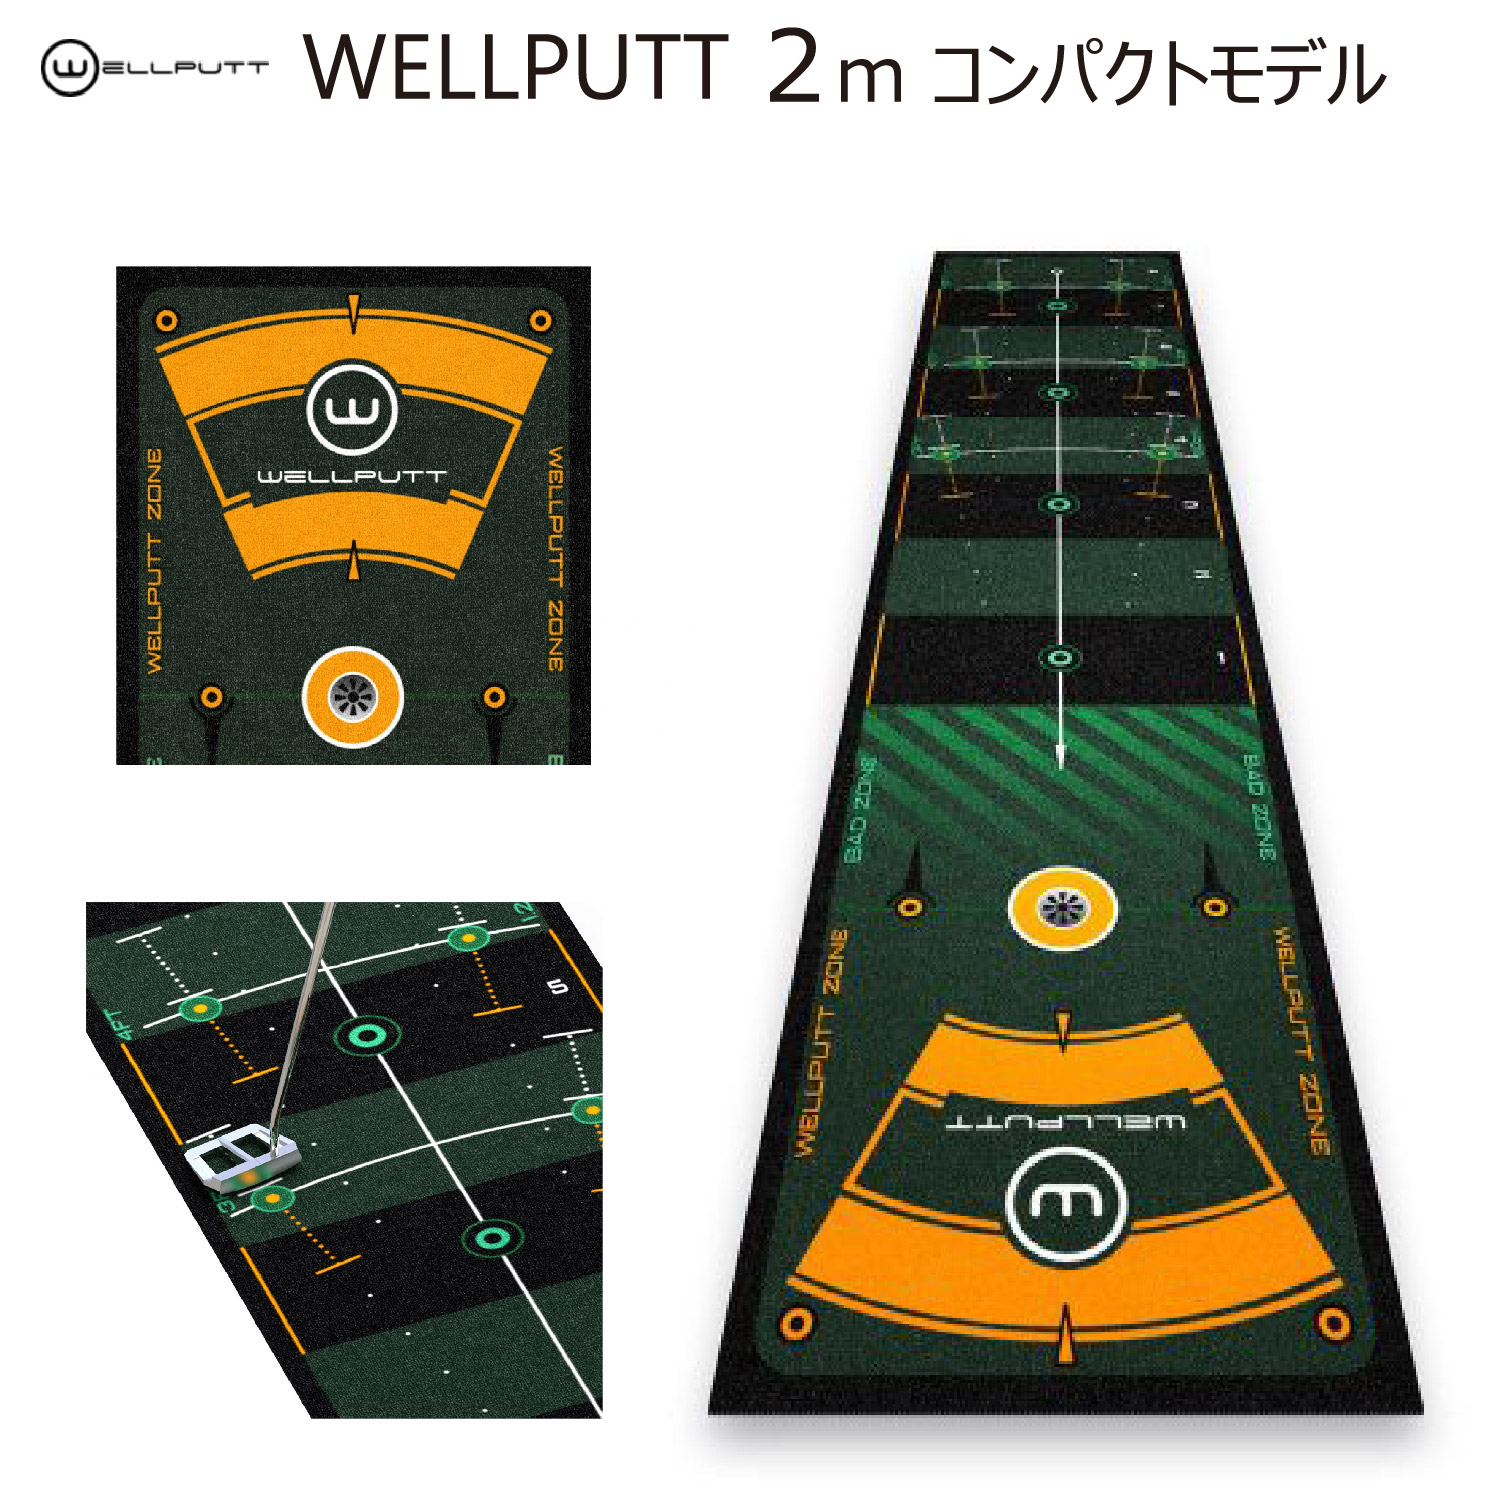 WELLPUTT MAT 2M コンパクトモデル 日本正規品